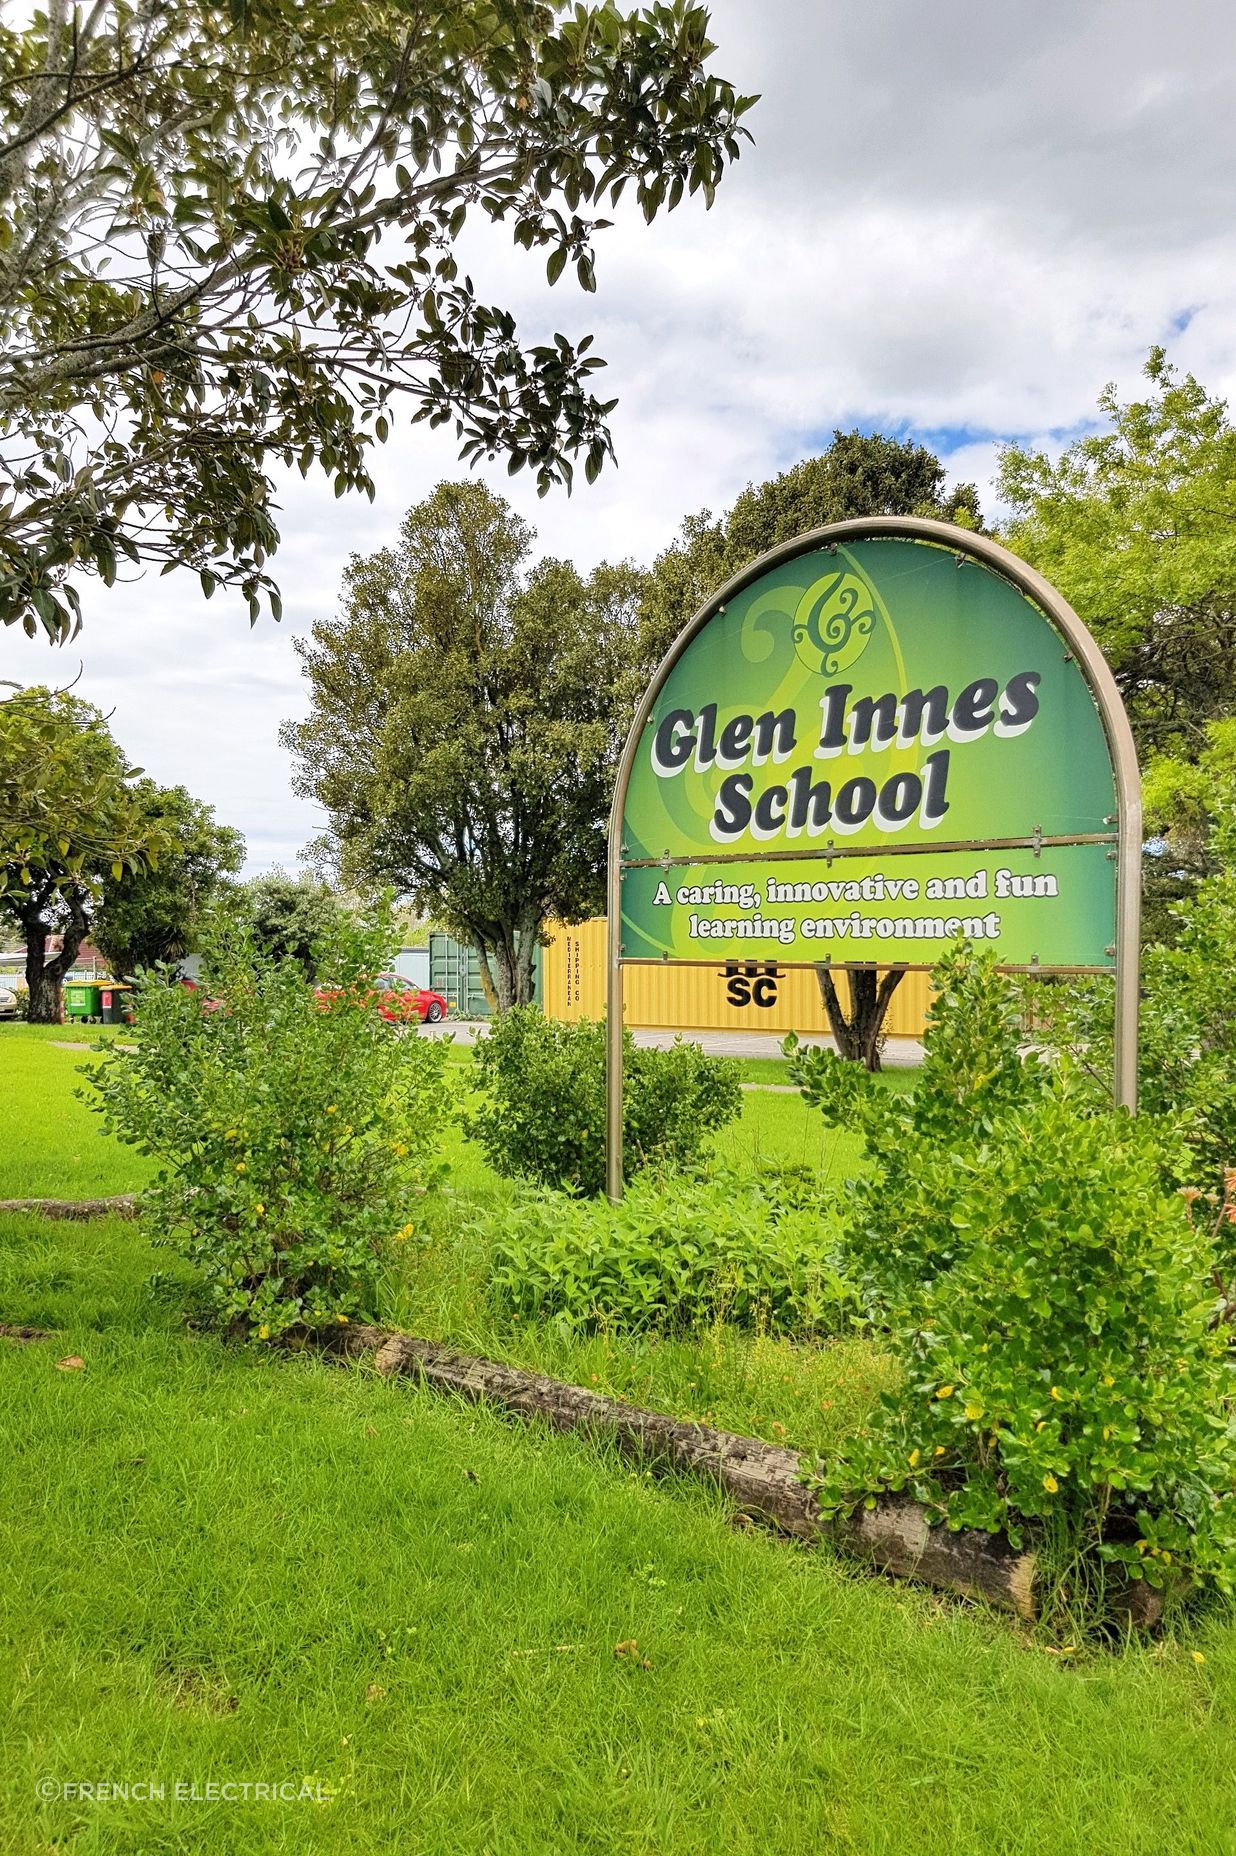 Glen Innes School